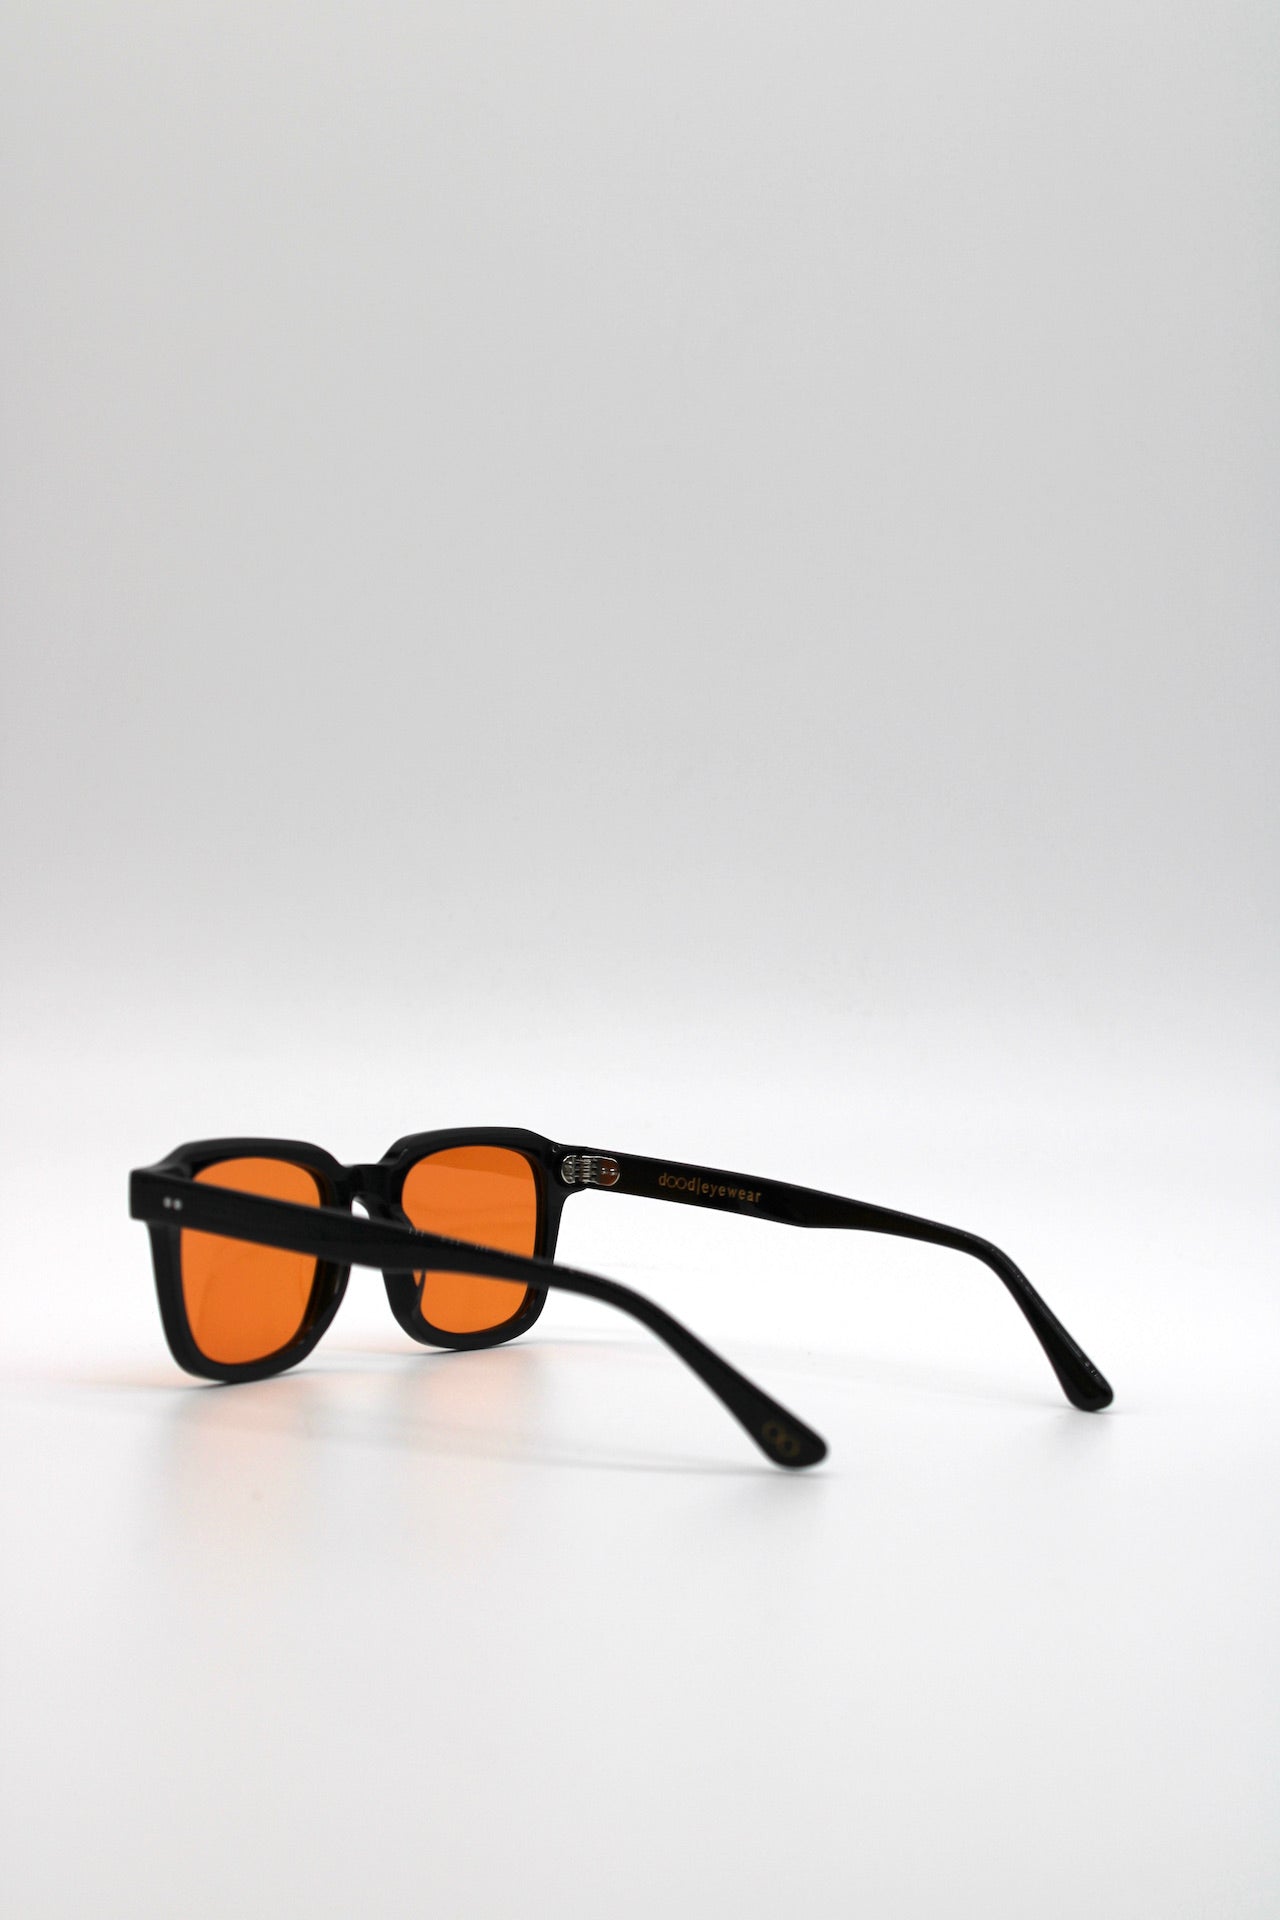 160 Originals Bold Black Frame with Unique Orange Lenses